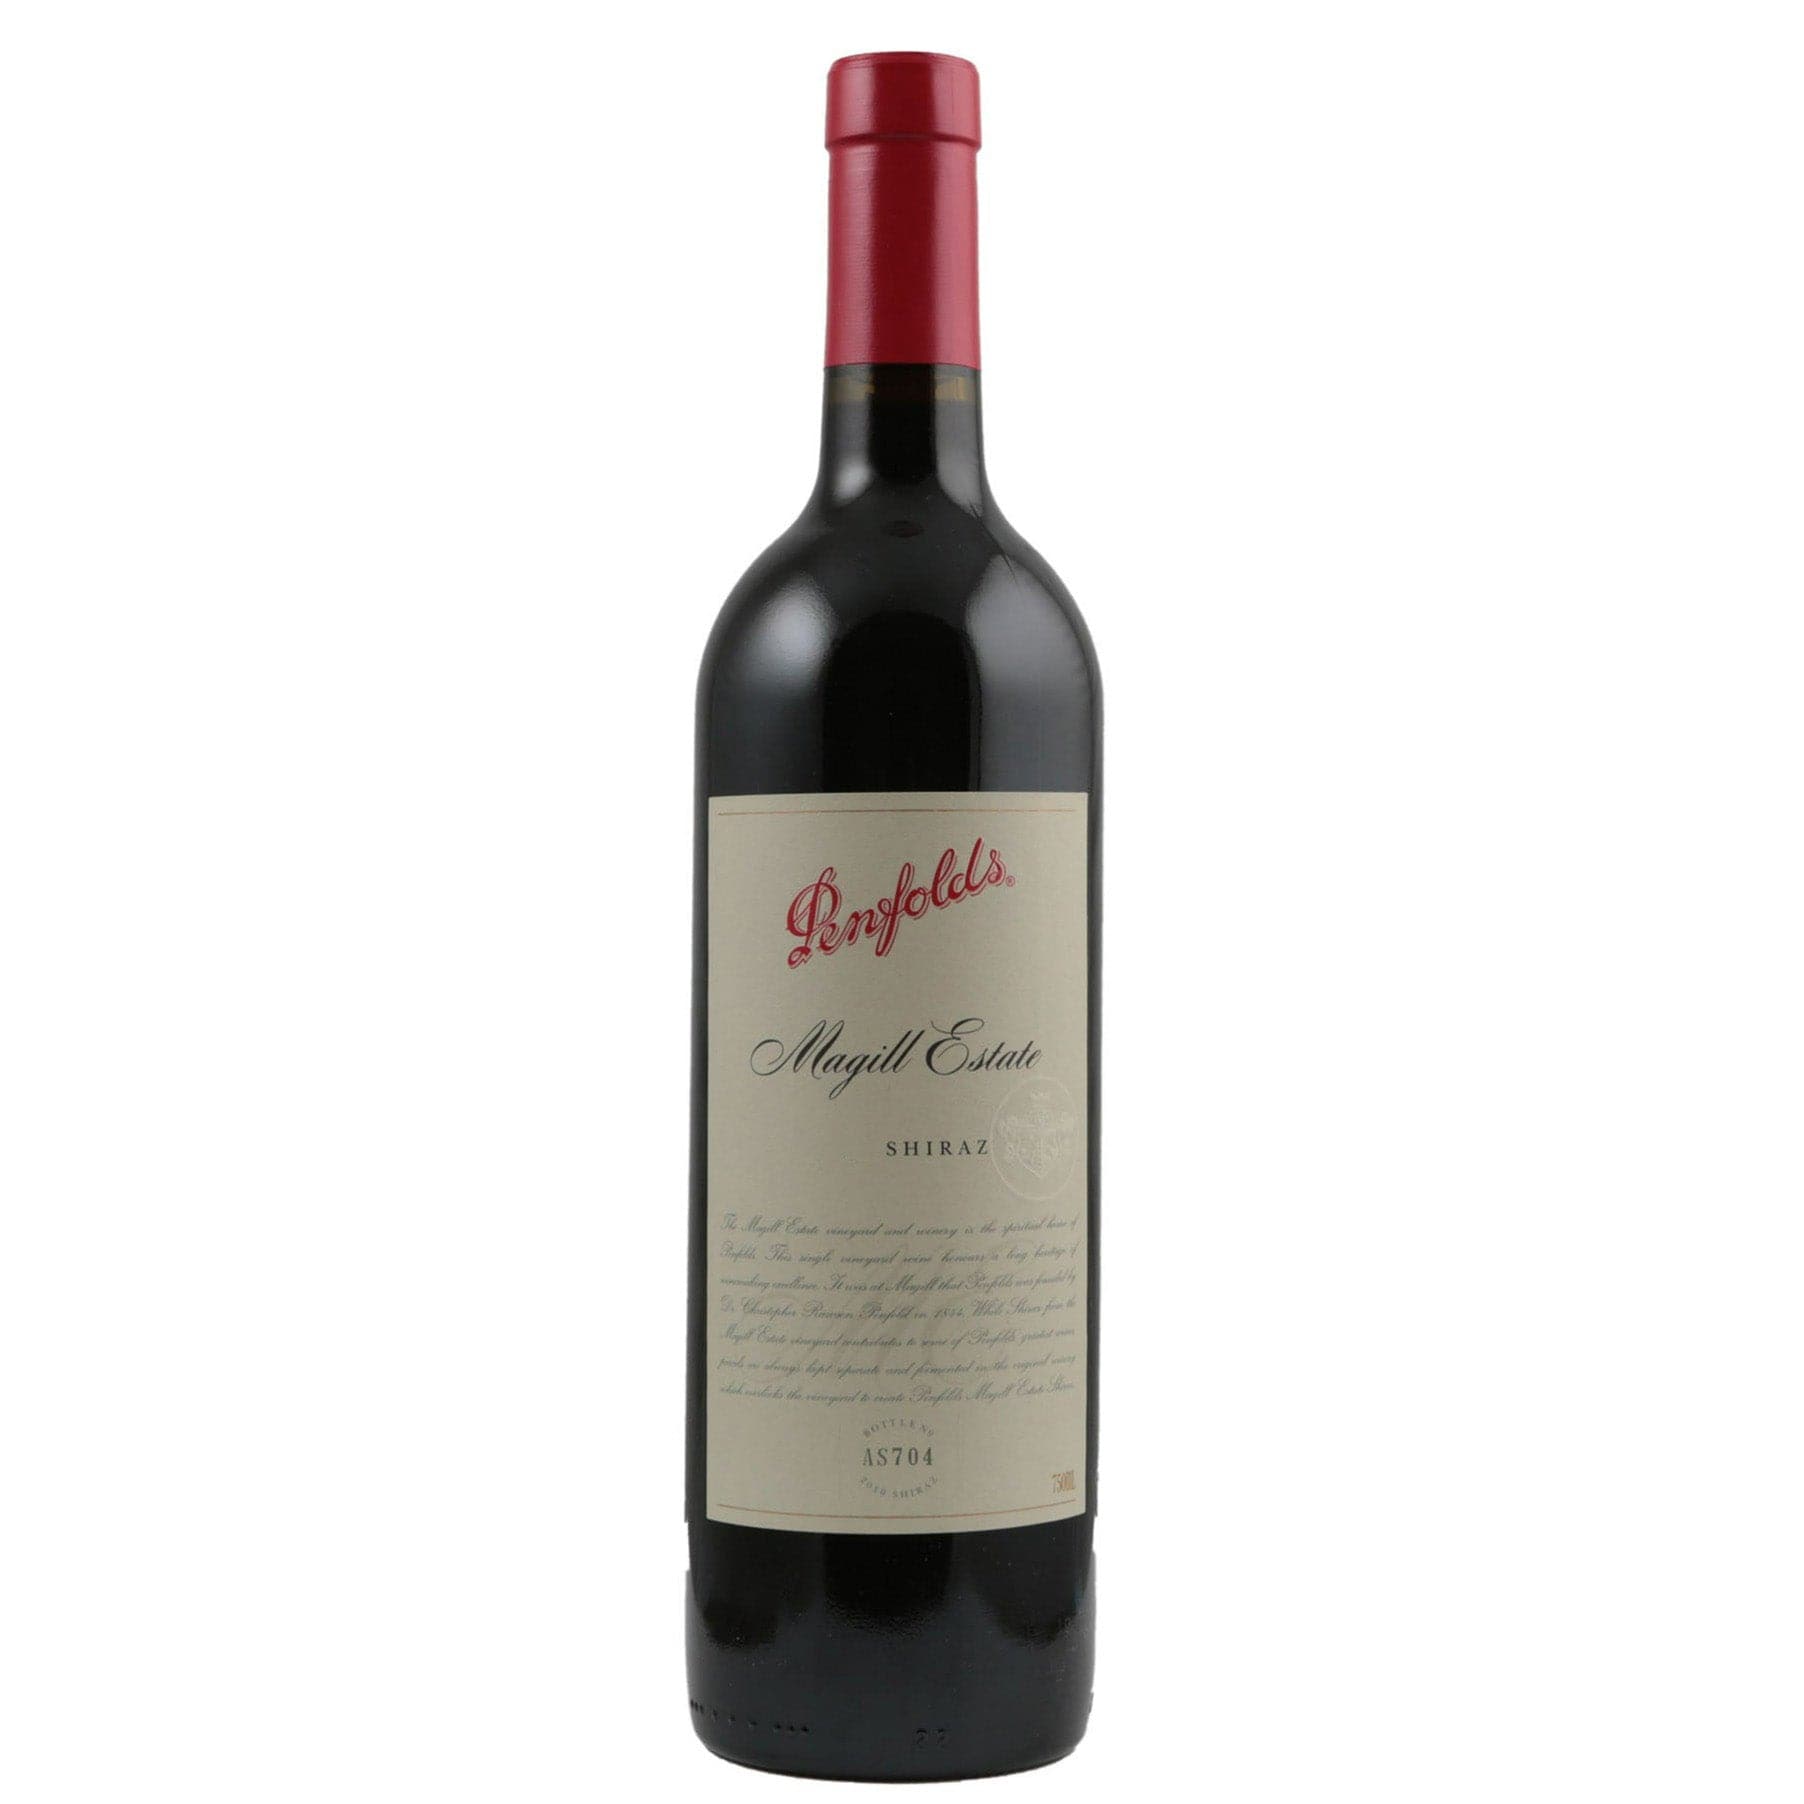 Single bottle of Red wine Penfolds, Magill Estate Shiraz Shiraz, South Australia, 2008 100% Shiraz